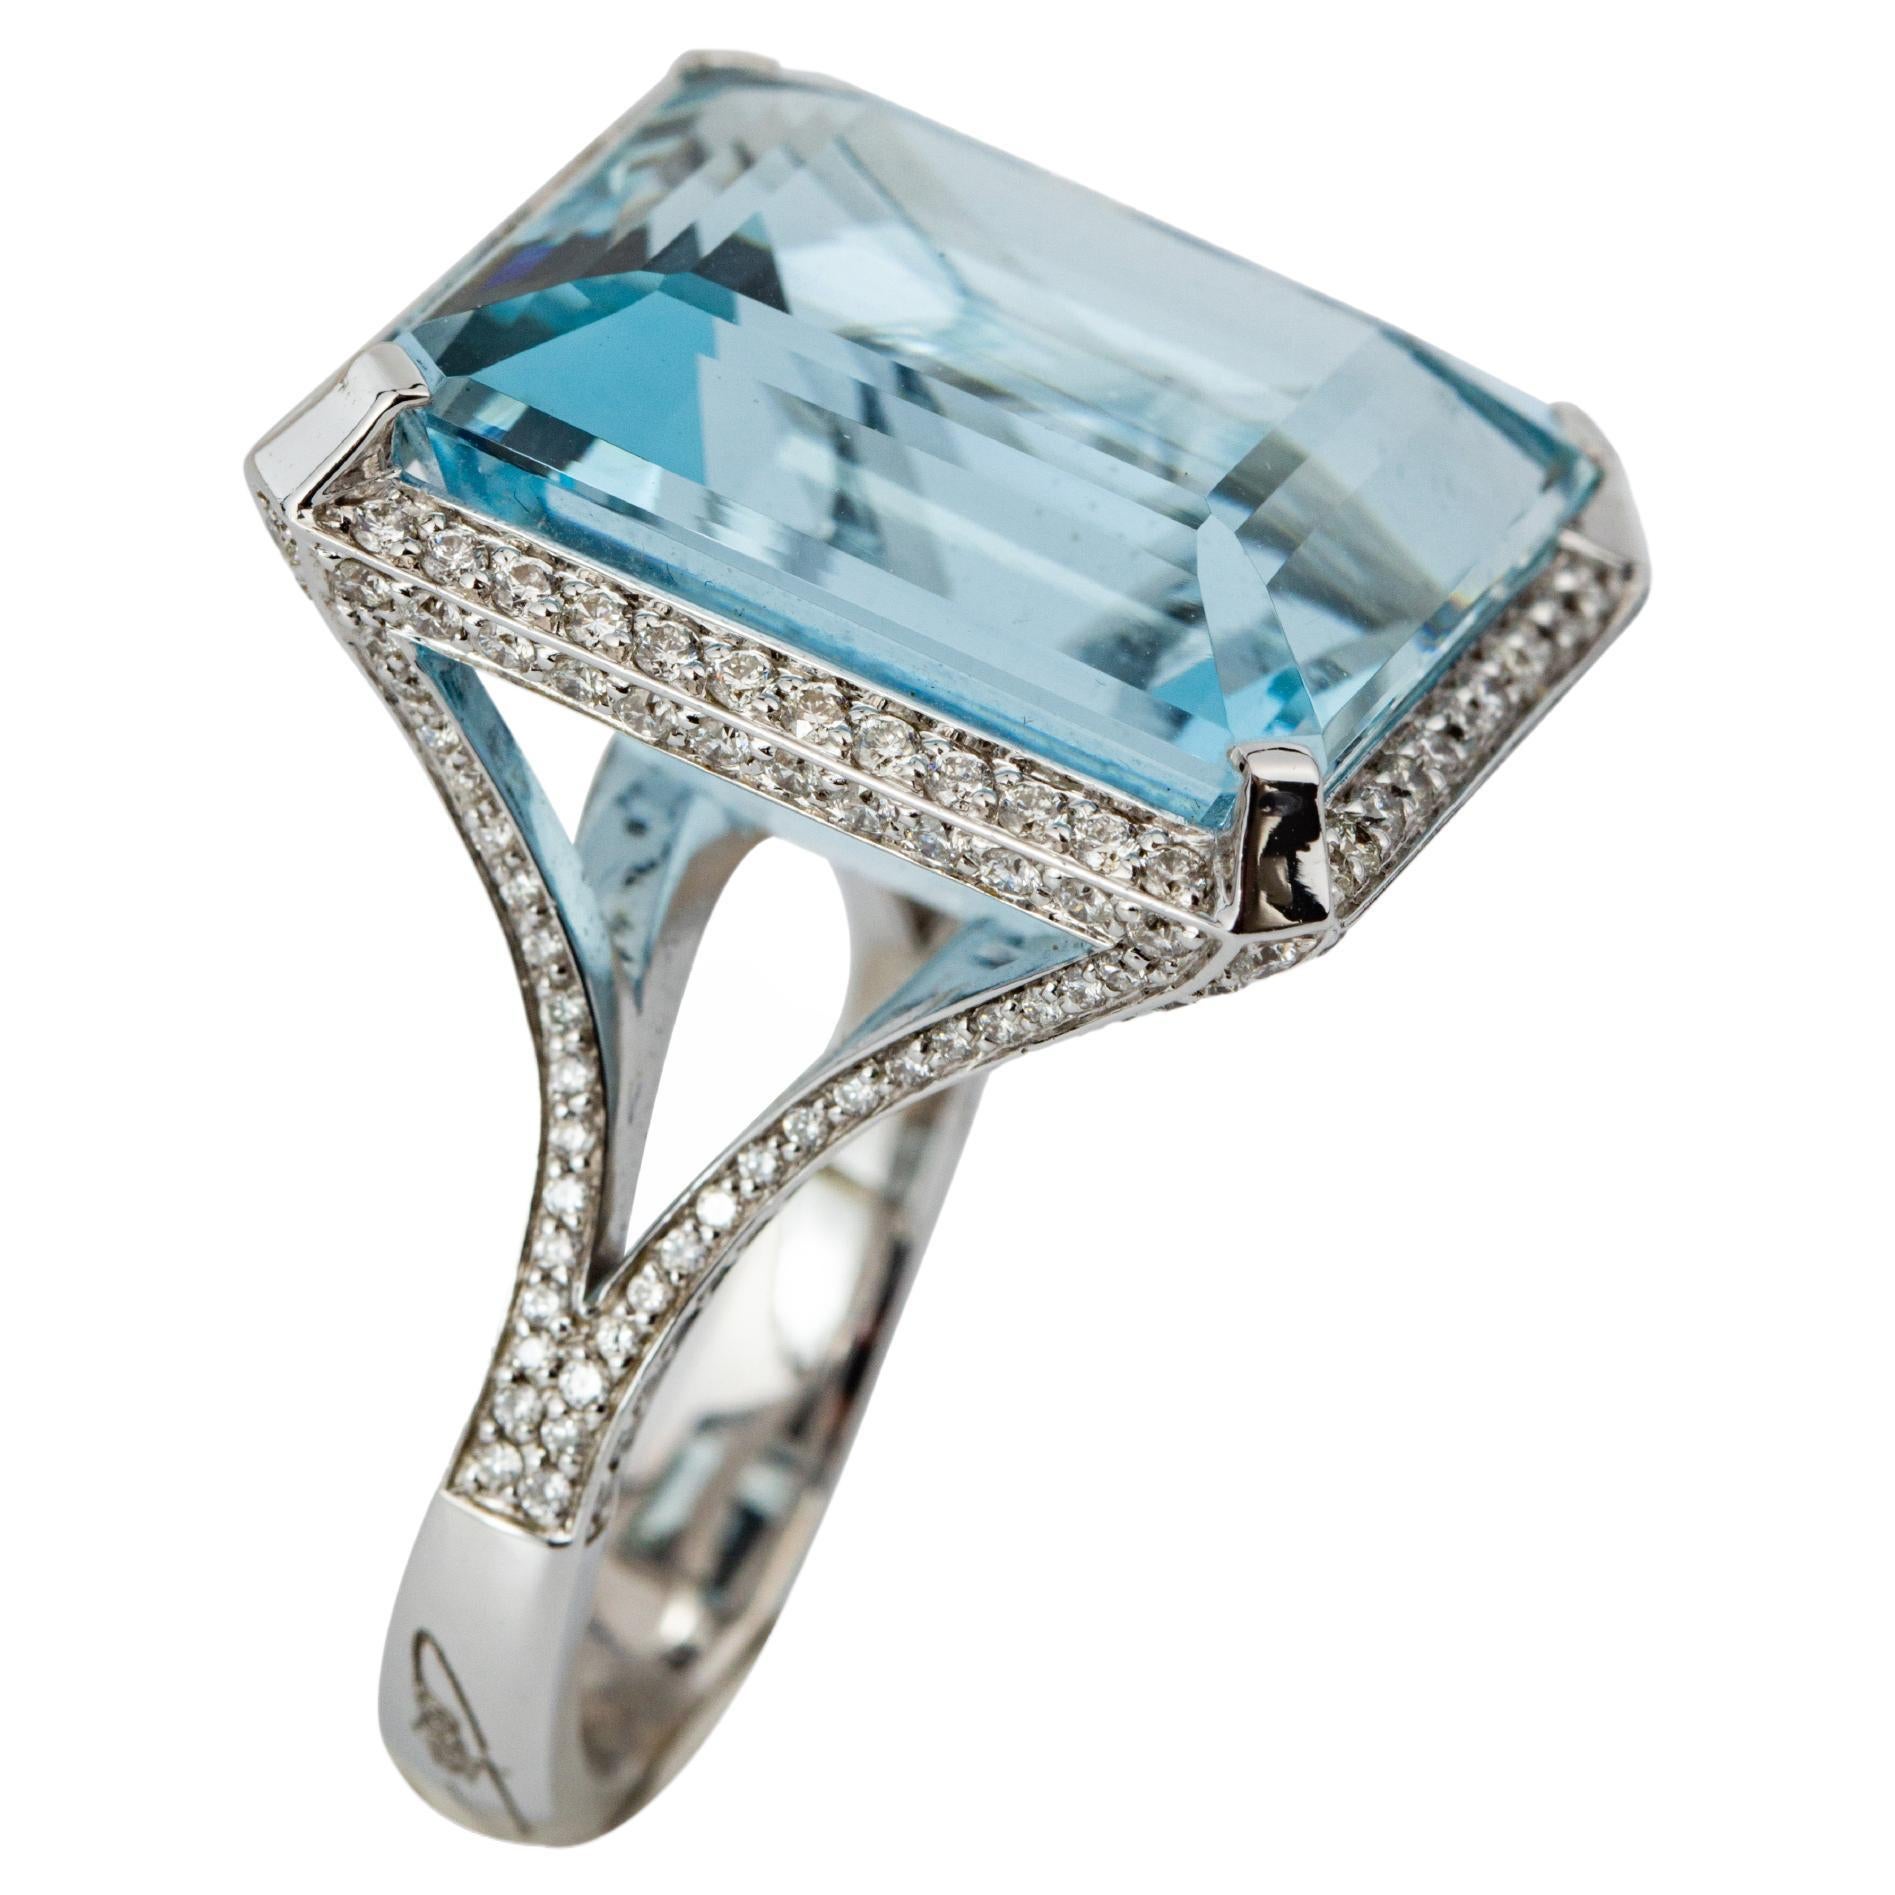 "Costis" Aquamarine Ring with 29.42 carats Aquamarine and Diamonds For Sale